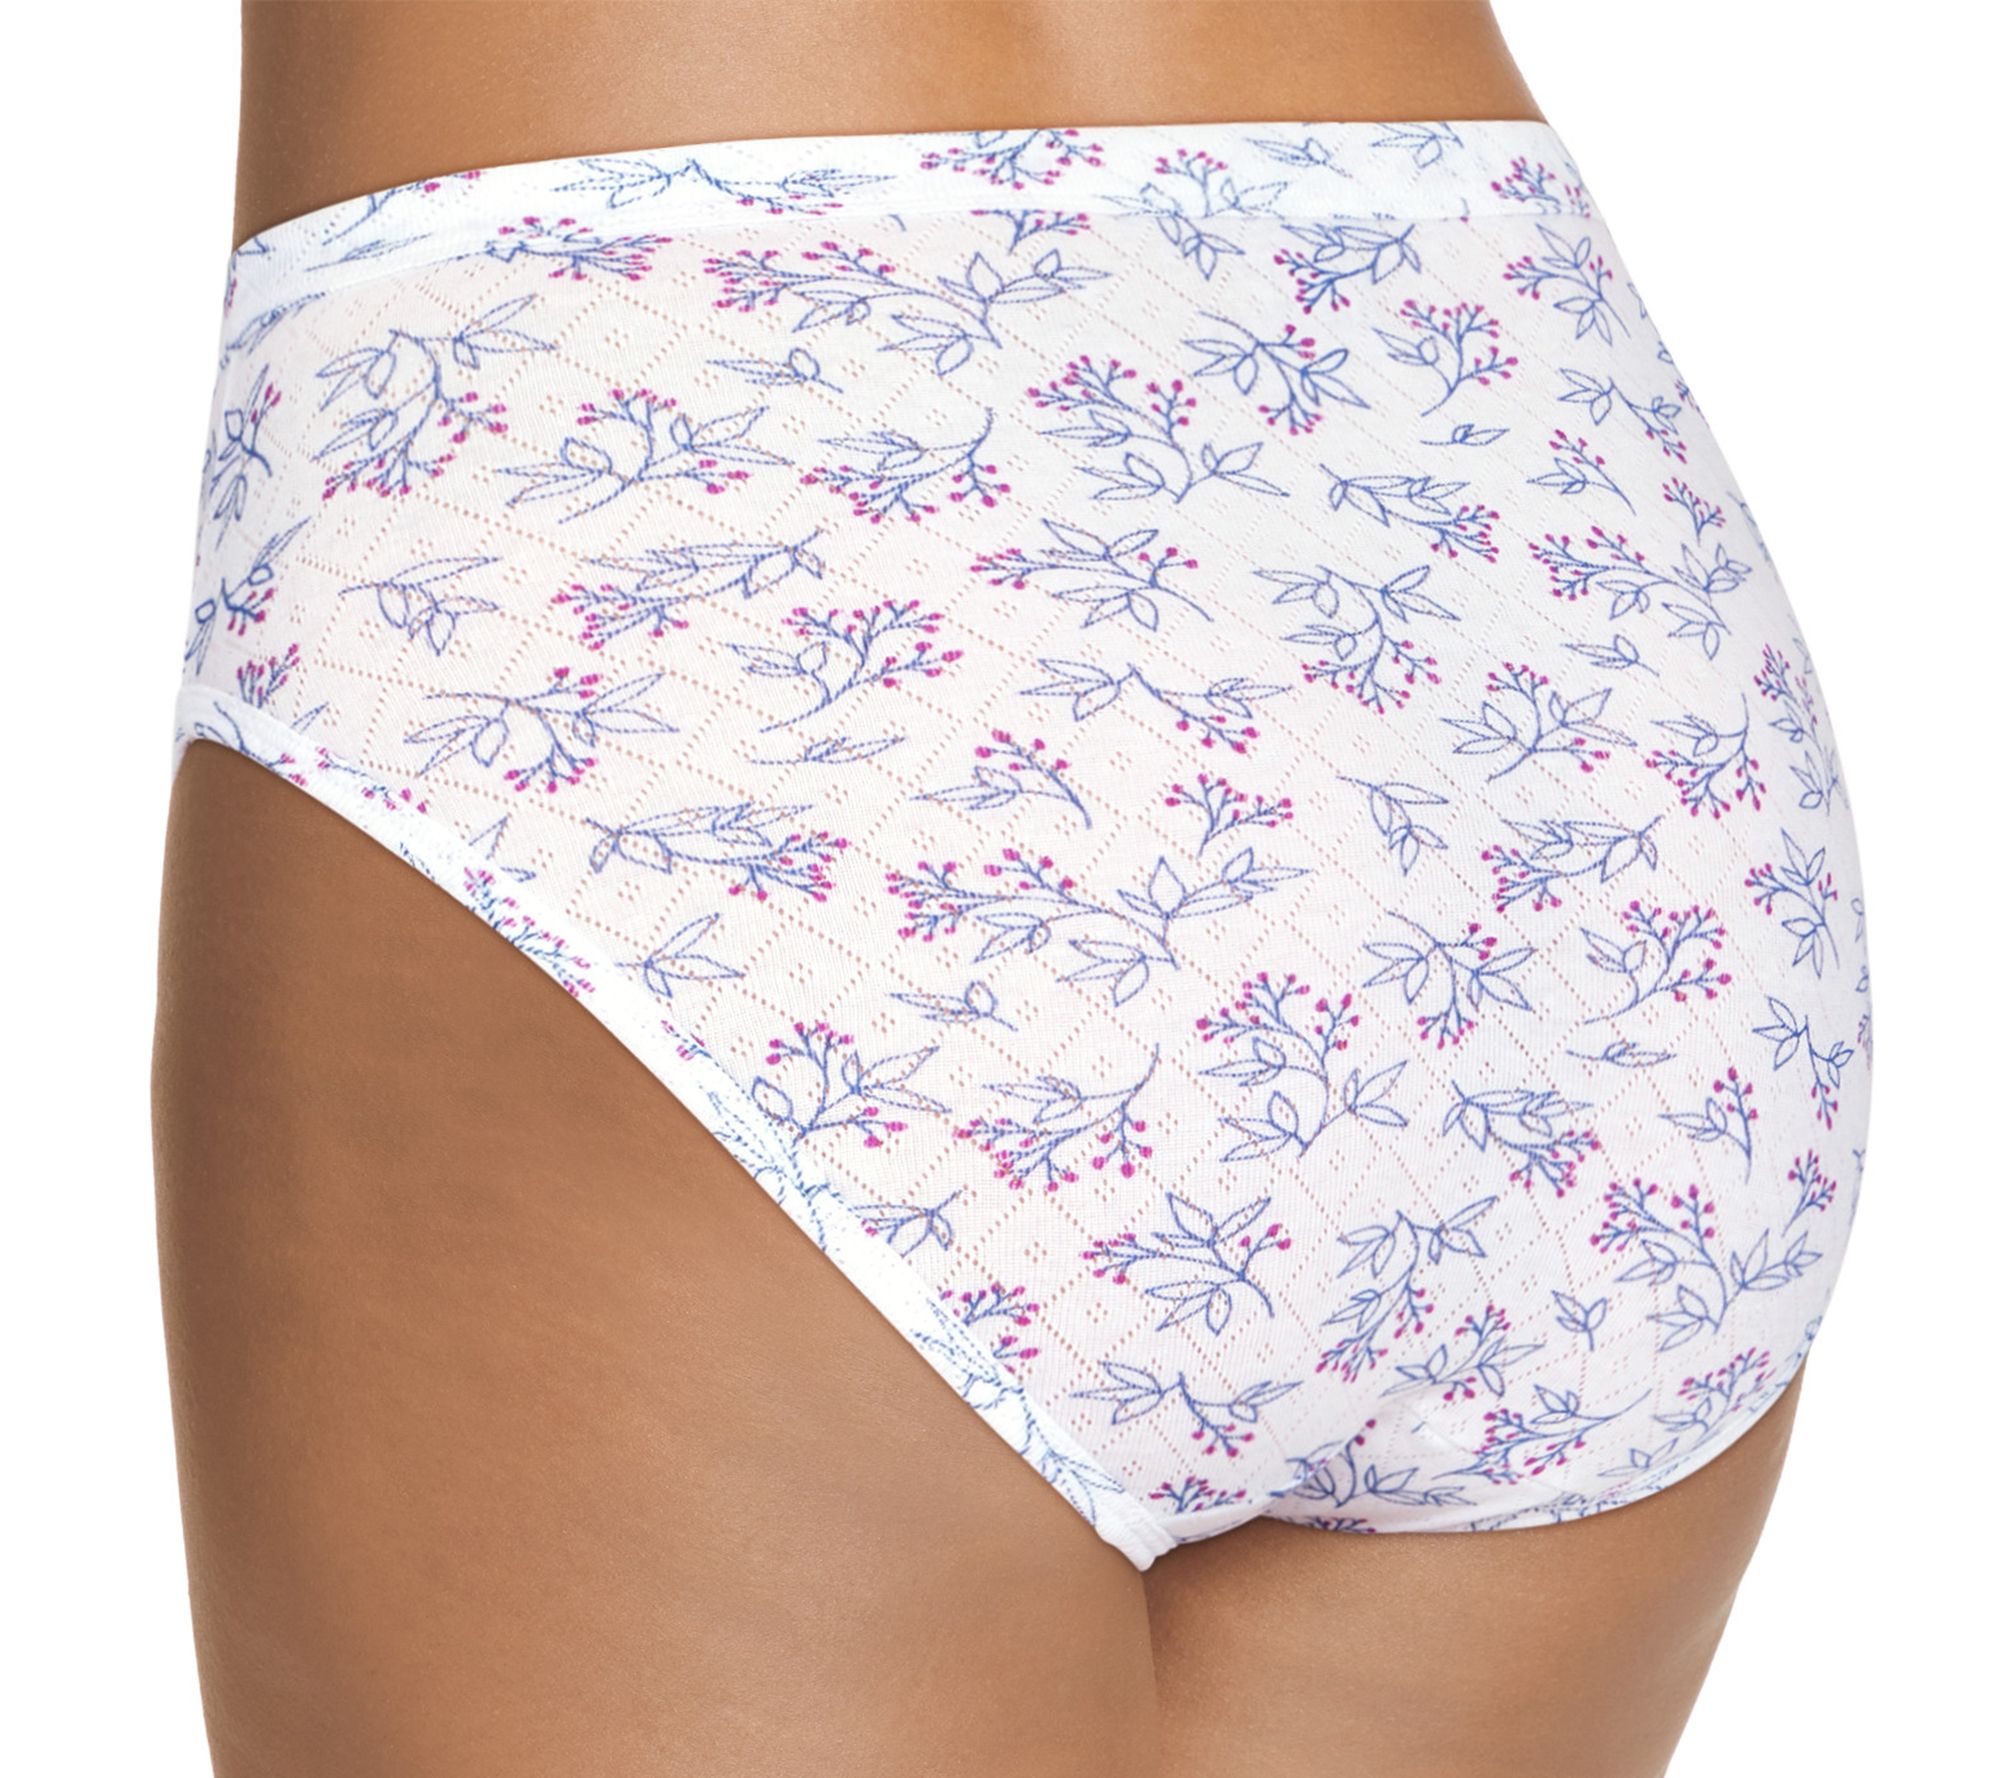 Jockey Women's size 7 Underwear Elance Cotton Briefs Cut 3 Pack White for  sale online